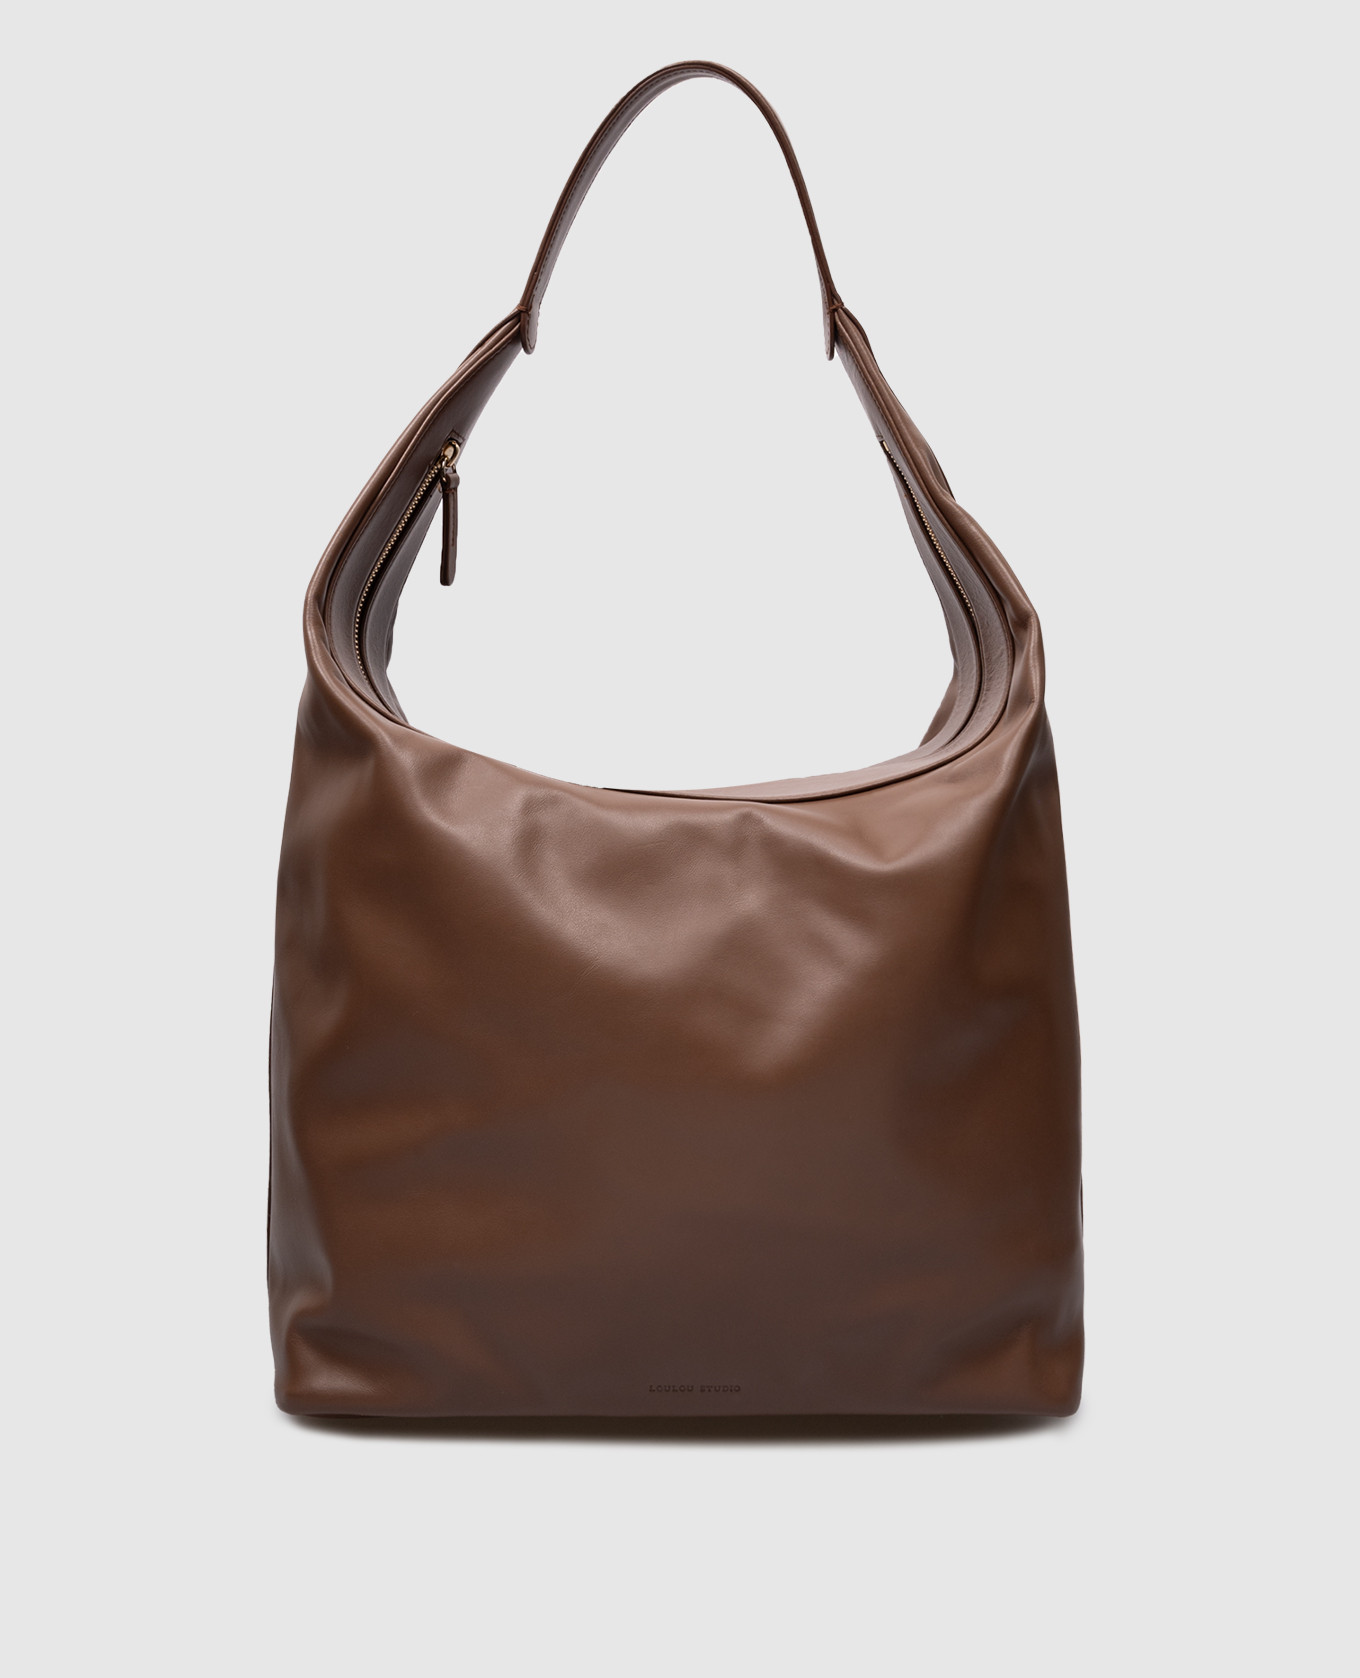 MILA logo brown leather hobo bag